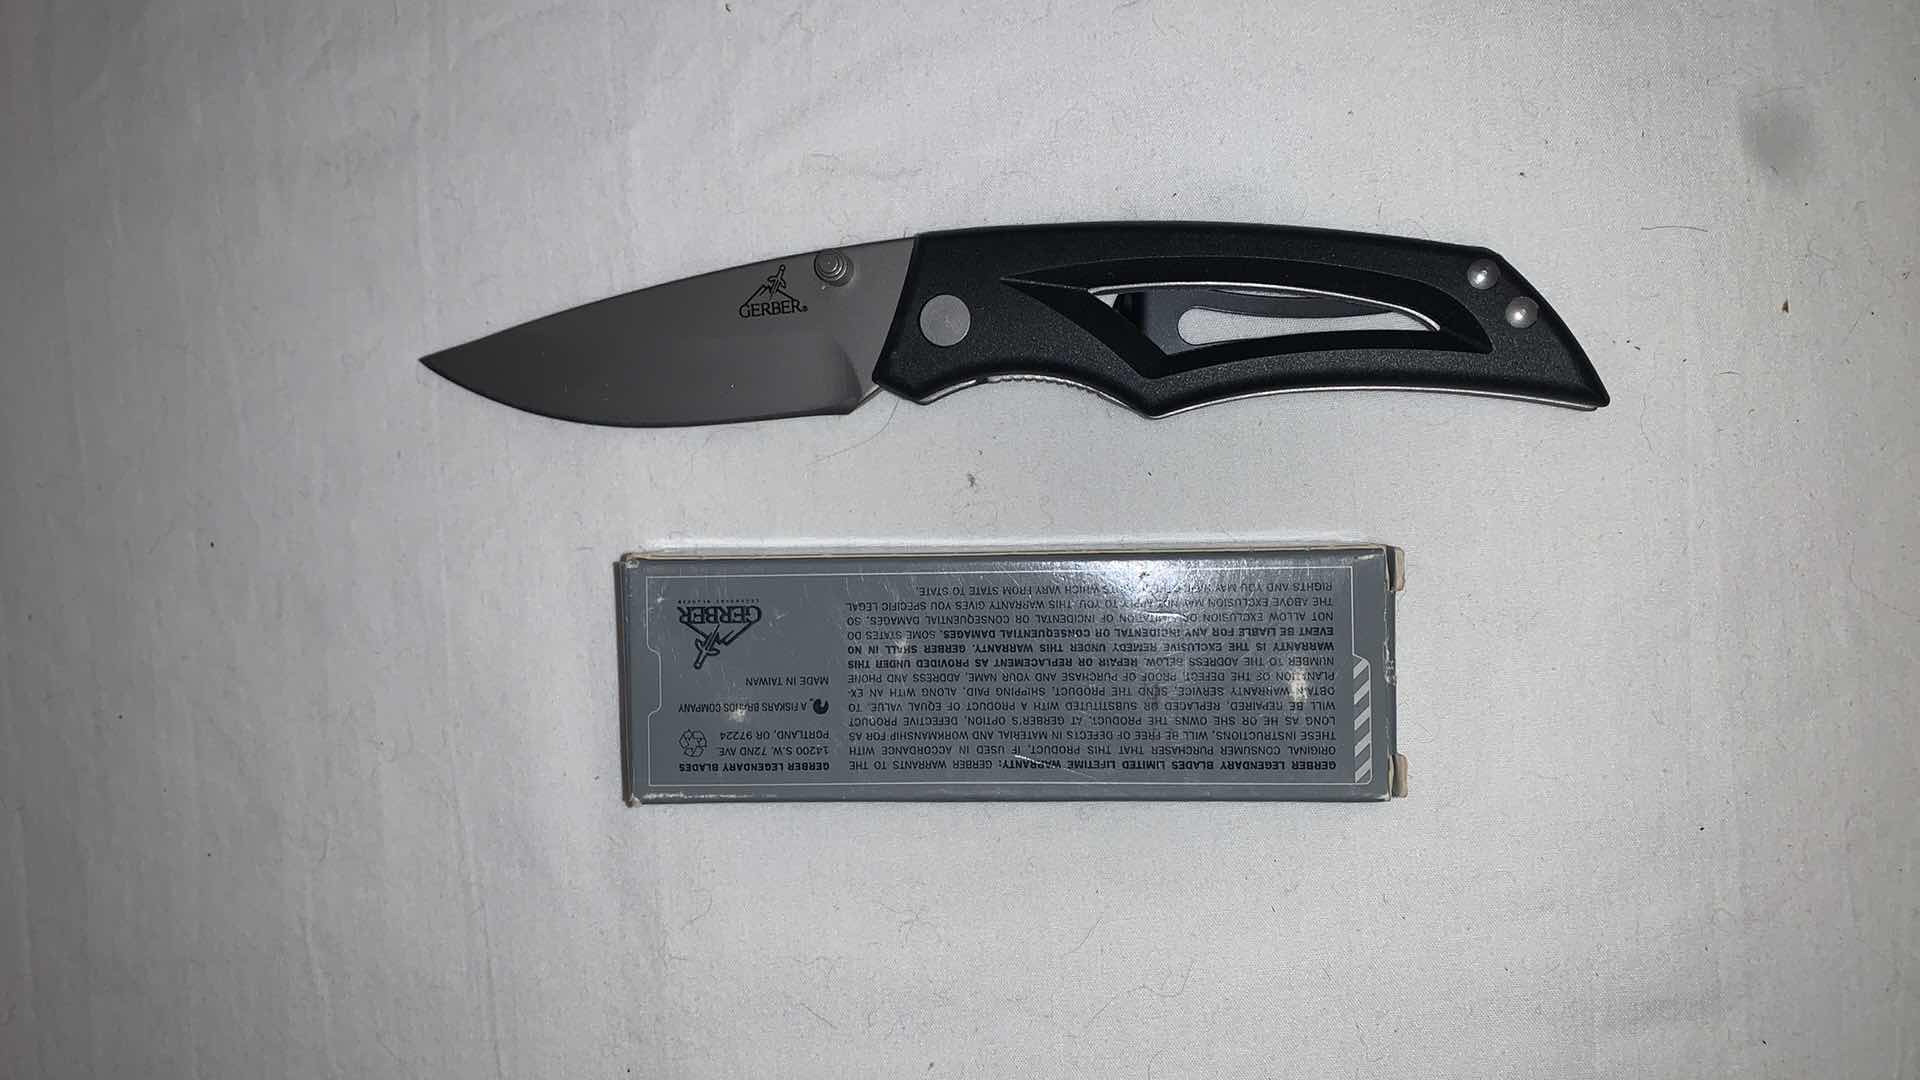 Photo 1 of GERBER BRAND POCKET KNIFE